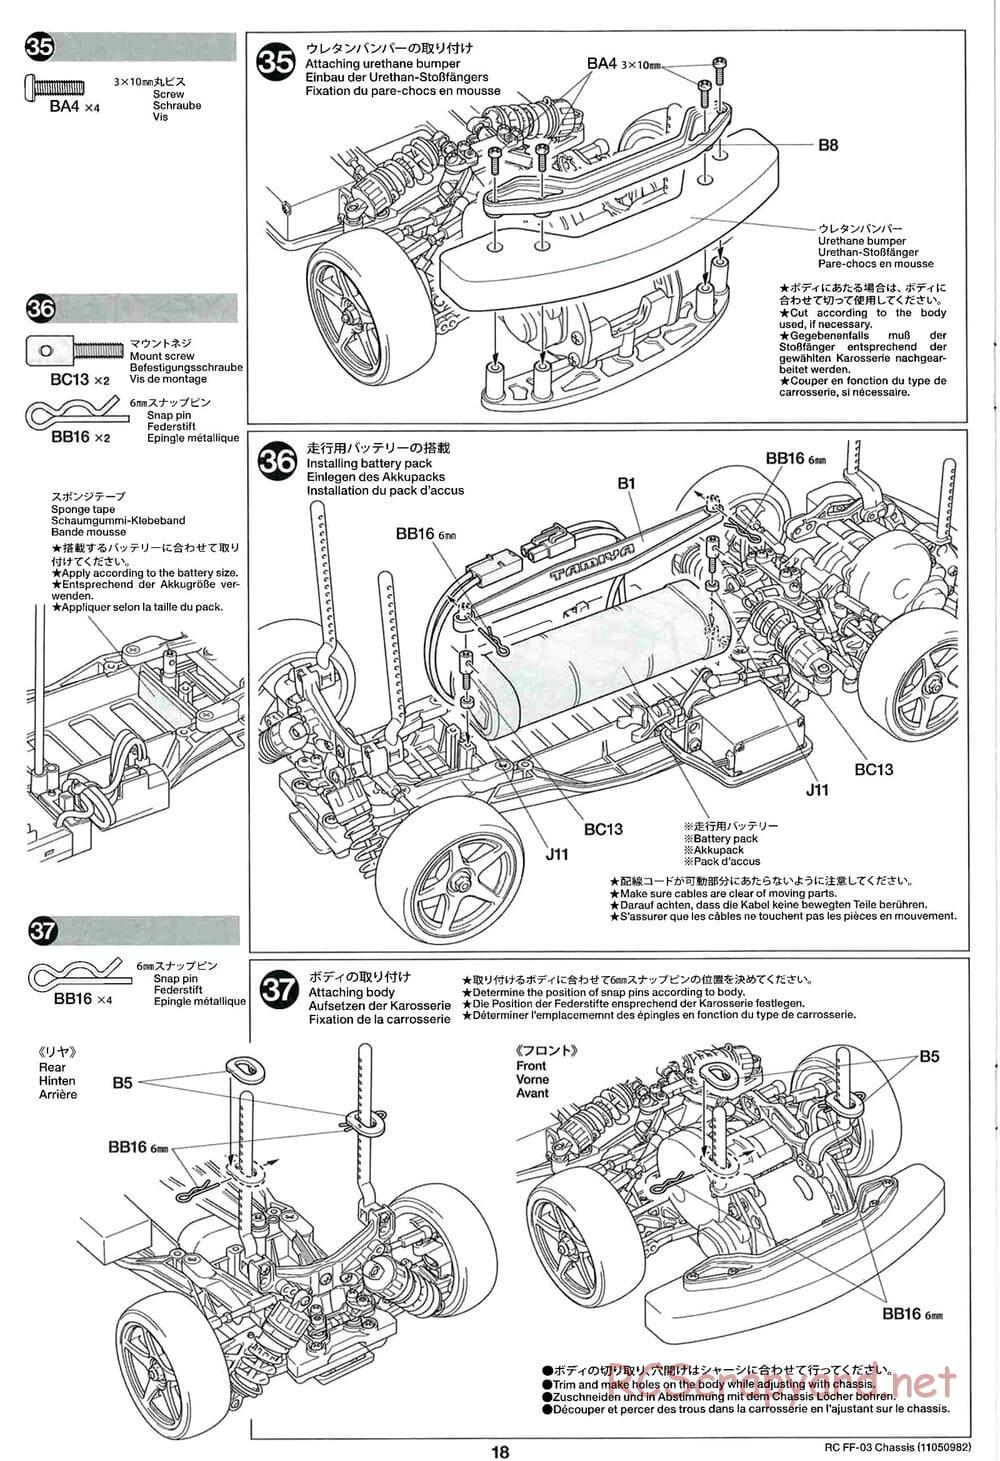 Tamiya - Honda Accord Aero Custom - FF-03 Chassis - Manual - Page 18